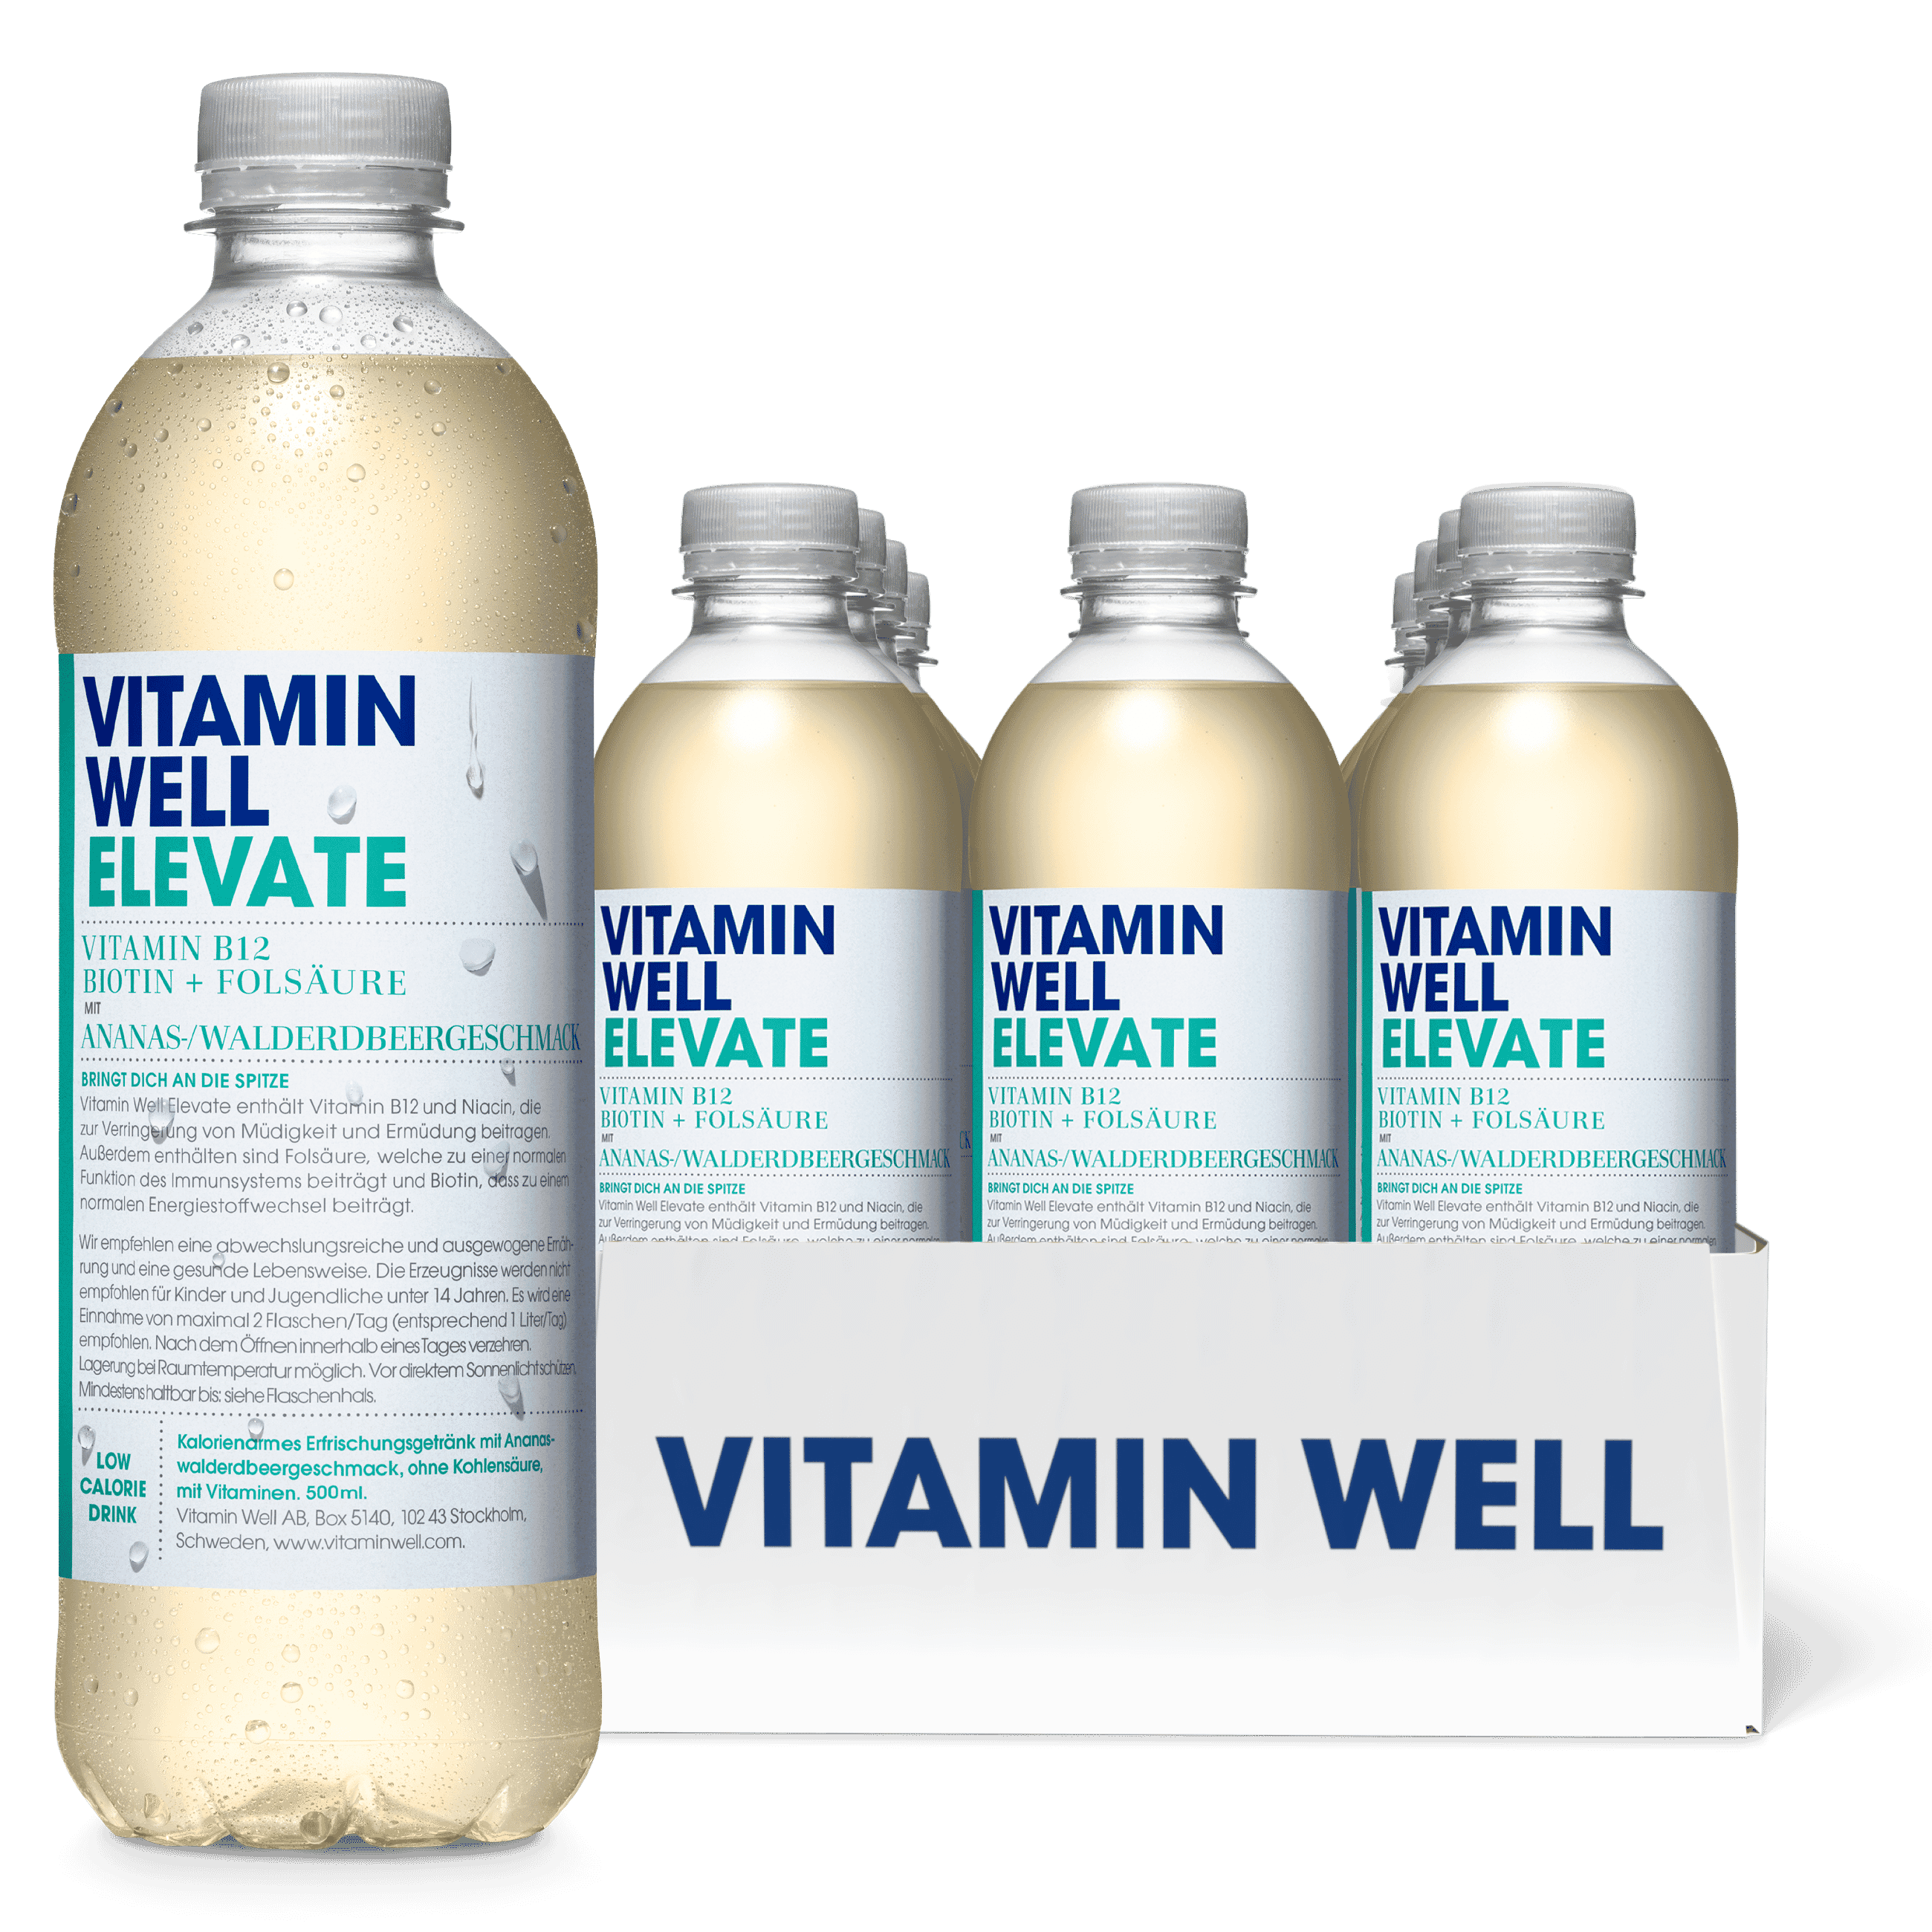 Vitamin Well Elevate